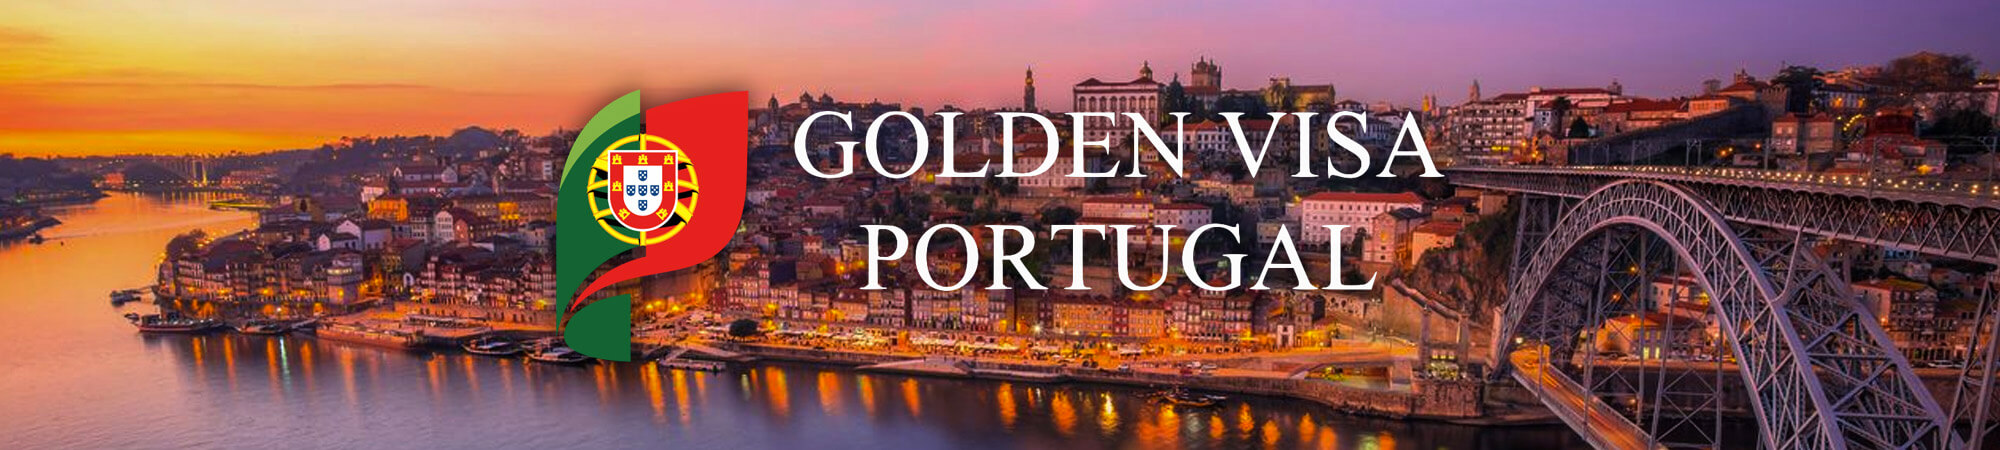 Golden visa Portugal